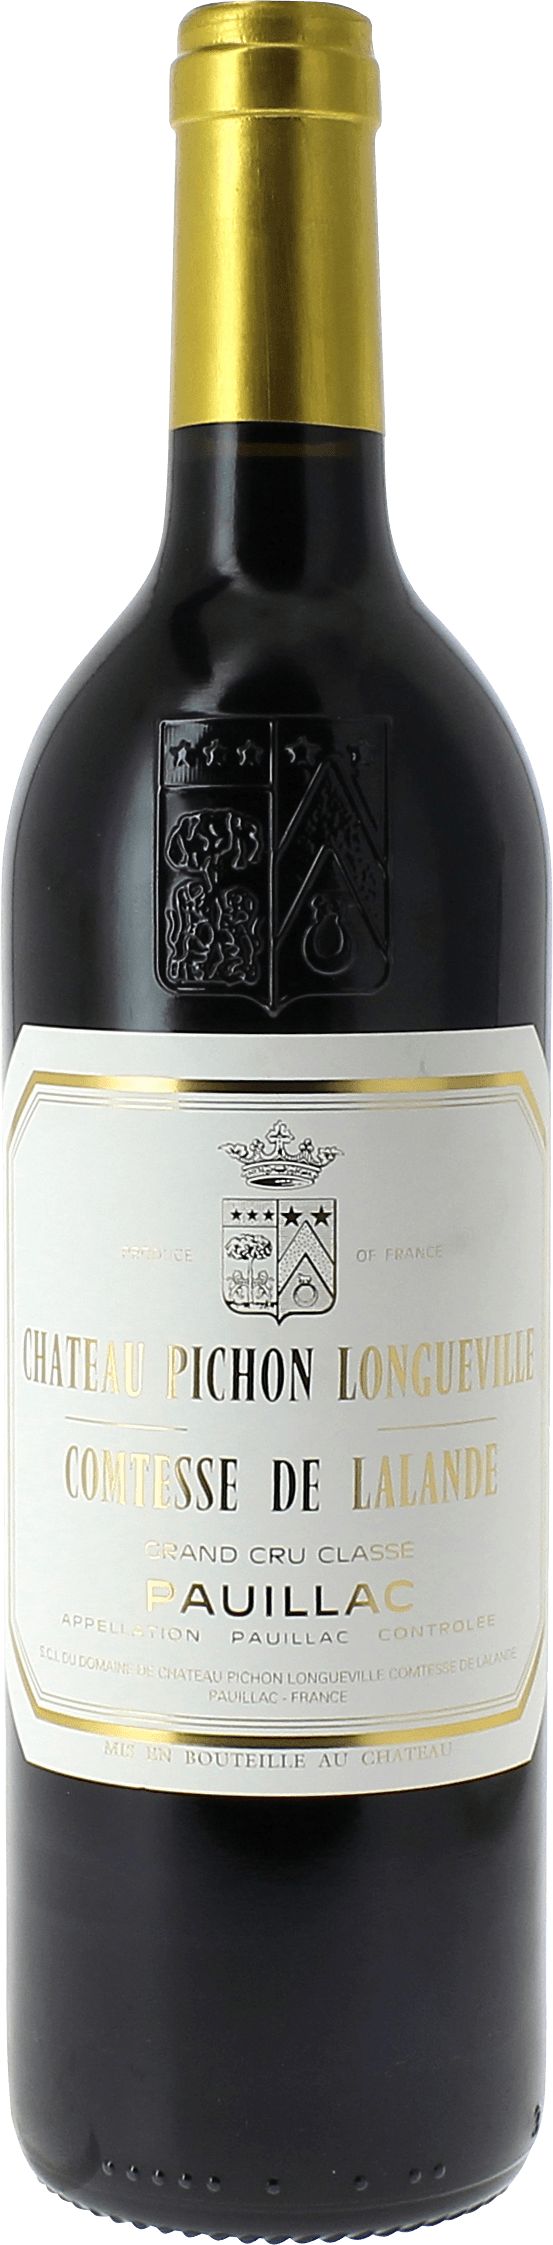 Pichon comtesse de lalande 1997 2me Grand cru class Pauillac, Bordeaux rouge